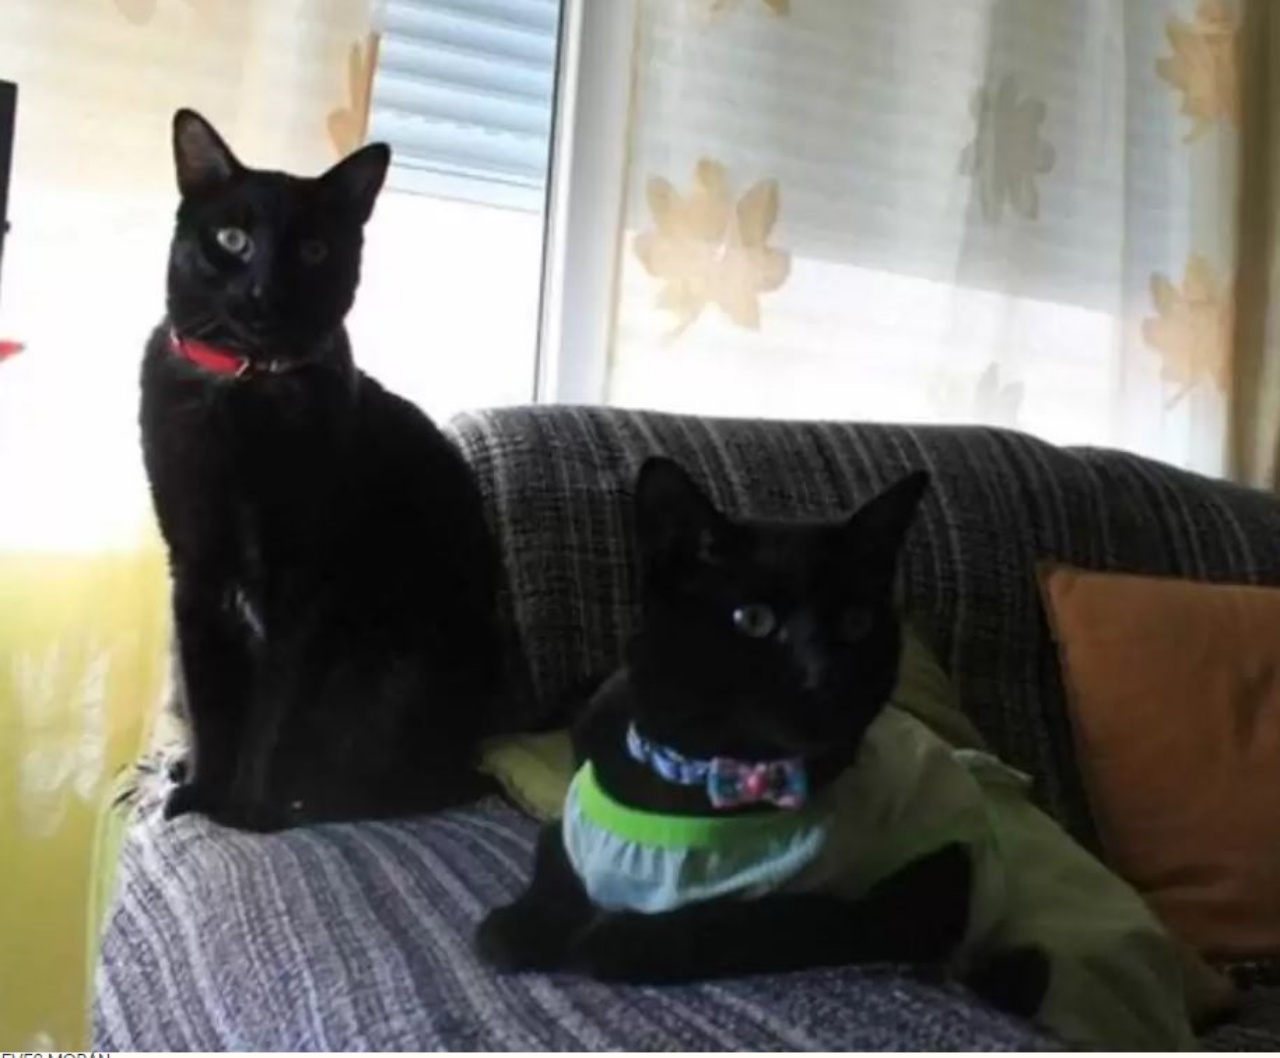 due gatti neri sul divano